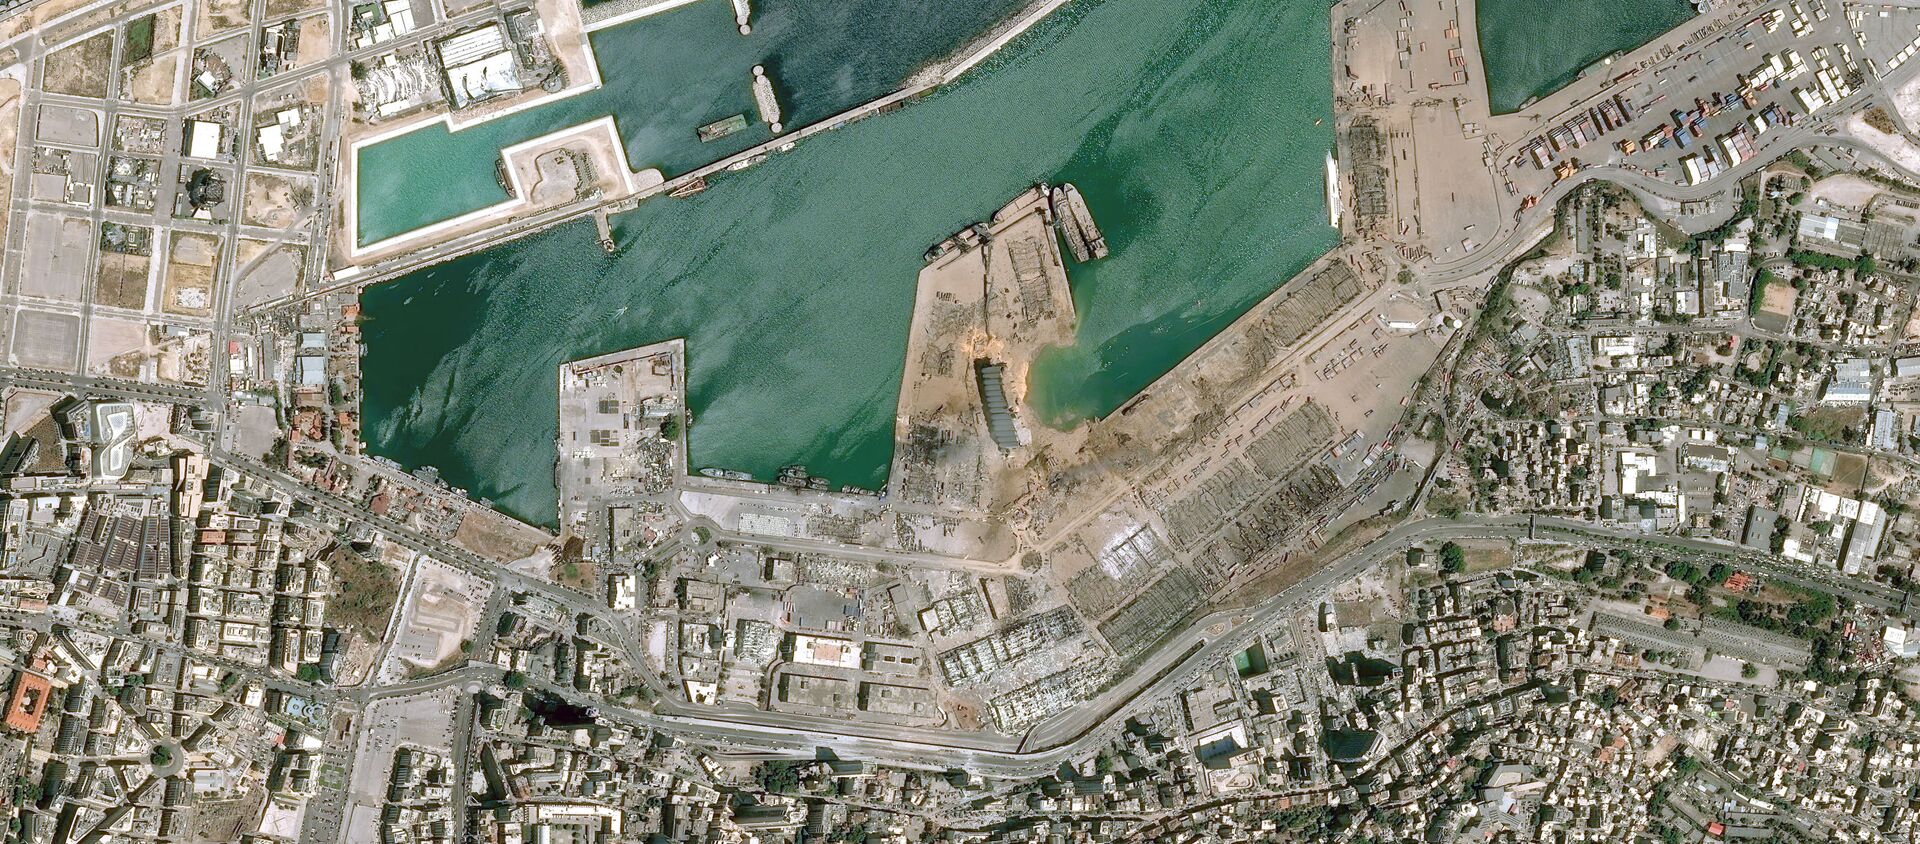  صورة أقمار صناعية، بتاريخ 5 أغسطس/ آب، تم الحصول عليها بإذن من المركز الوطني للدراسات الفضائية الفرنسية، تظهر مرفأ بيروت بعد الانفجار في 4 أغسطس/ آب 2020. - سبوتنيك عربي, 1920, 09.08.2020